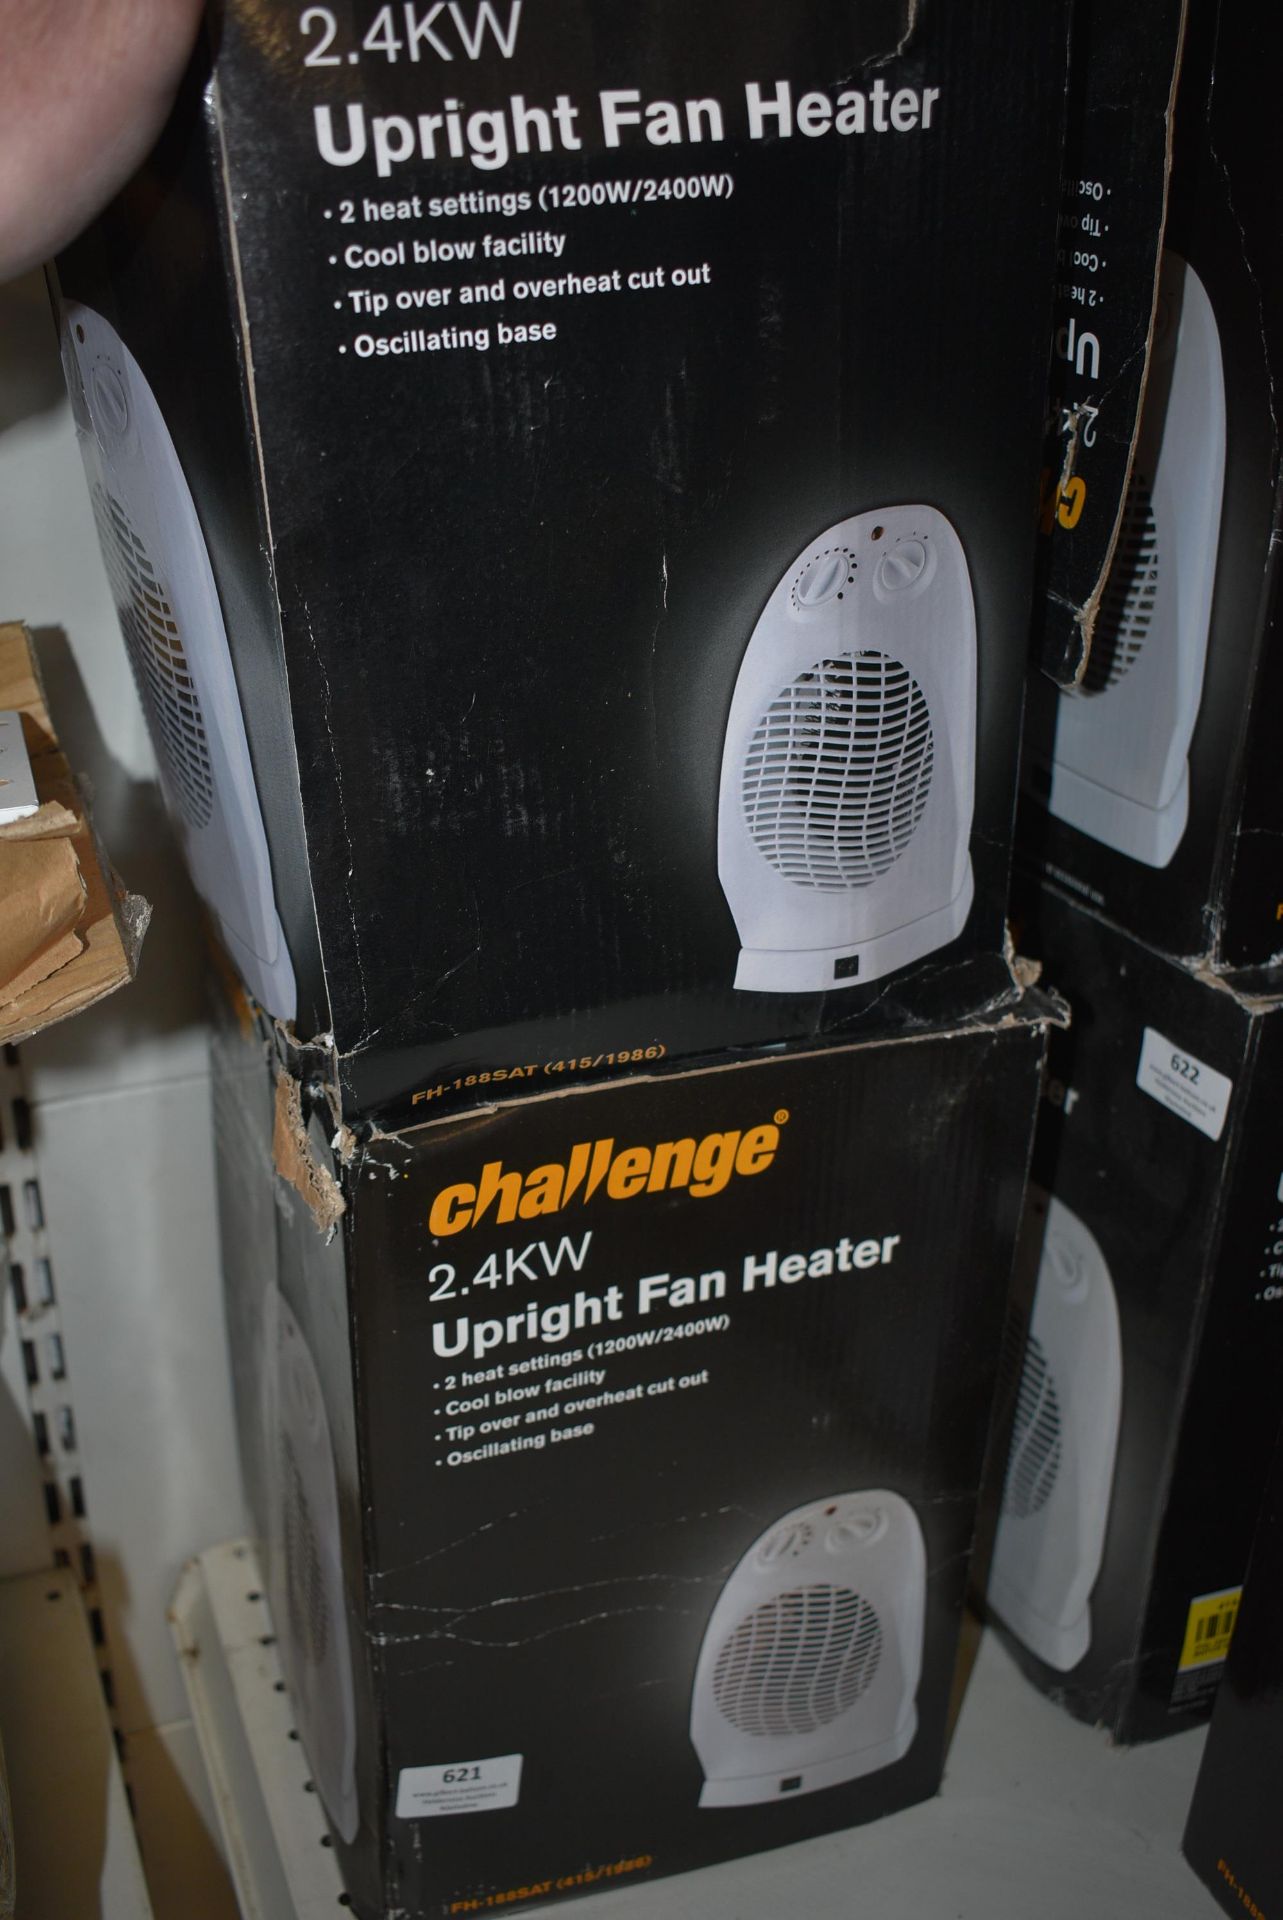 Two Challenge Upright Fan Heaters